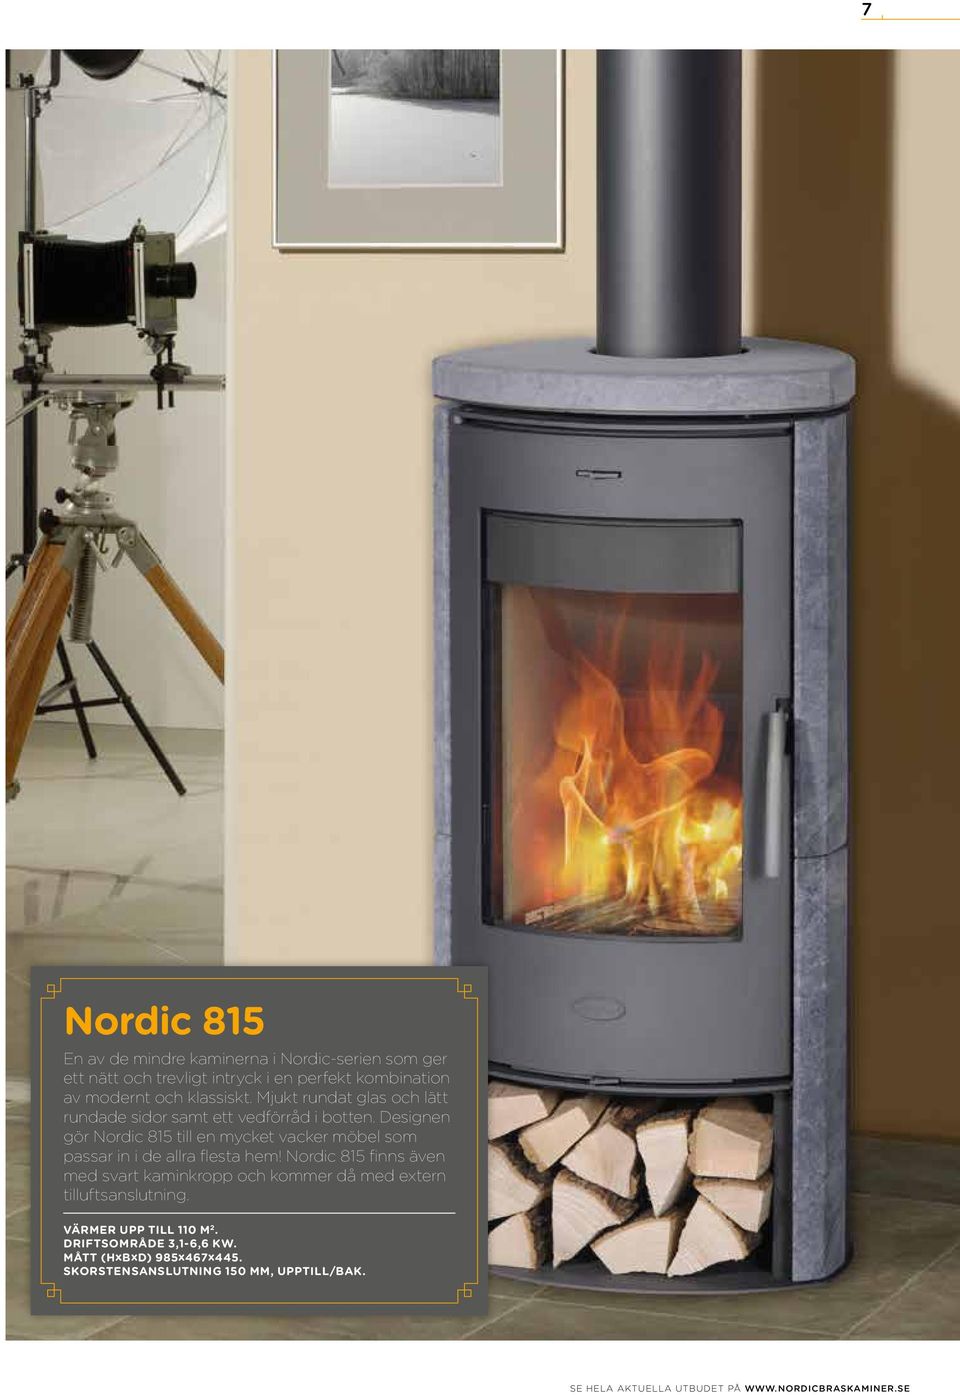 Designen gör Nordic 815 till en mycket vacker möbel som passar in i de allra flesta hem!